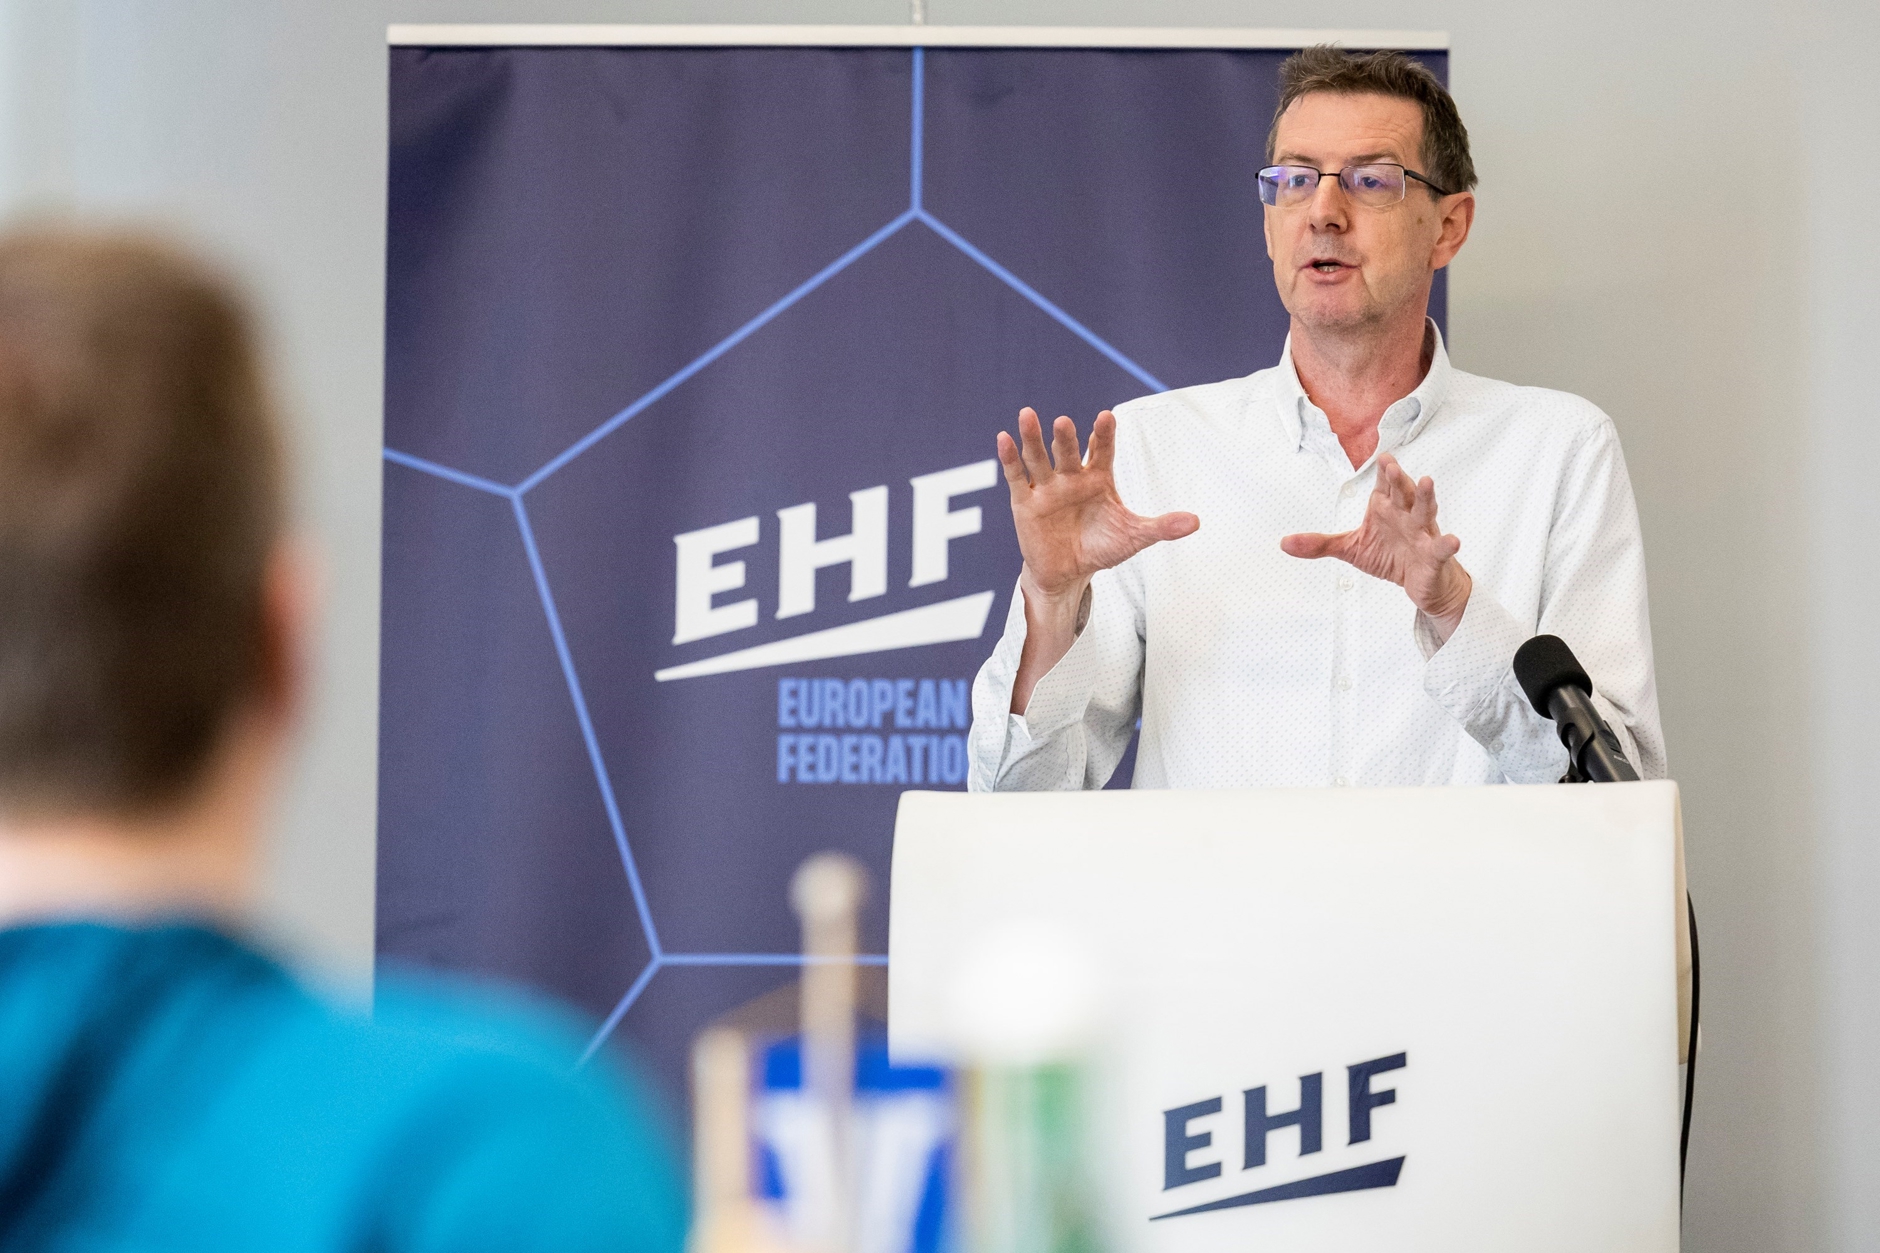 ... und Markus Glaser informierten über die Entwicklung der EHF-Strukturen